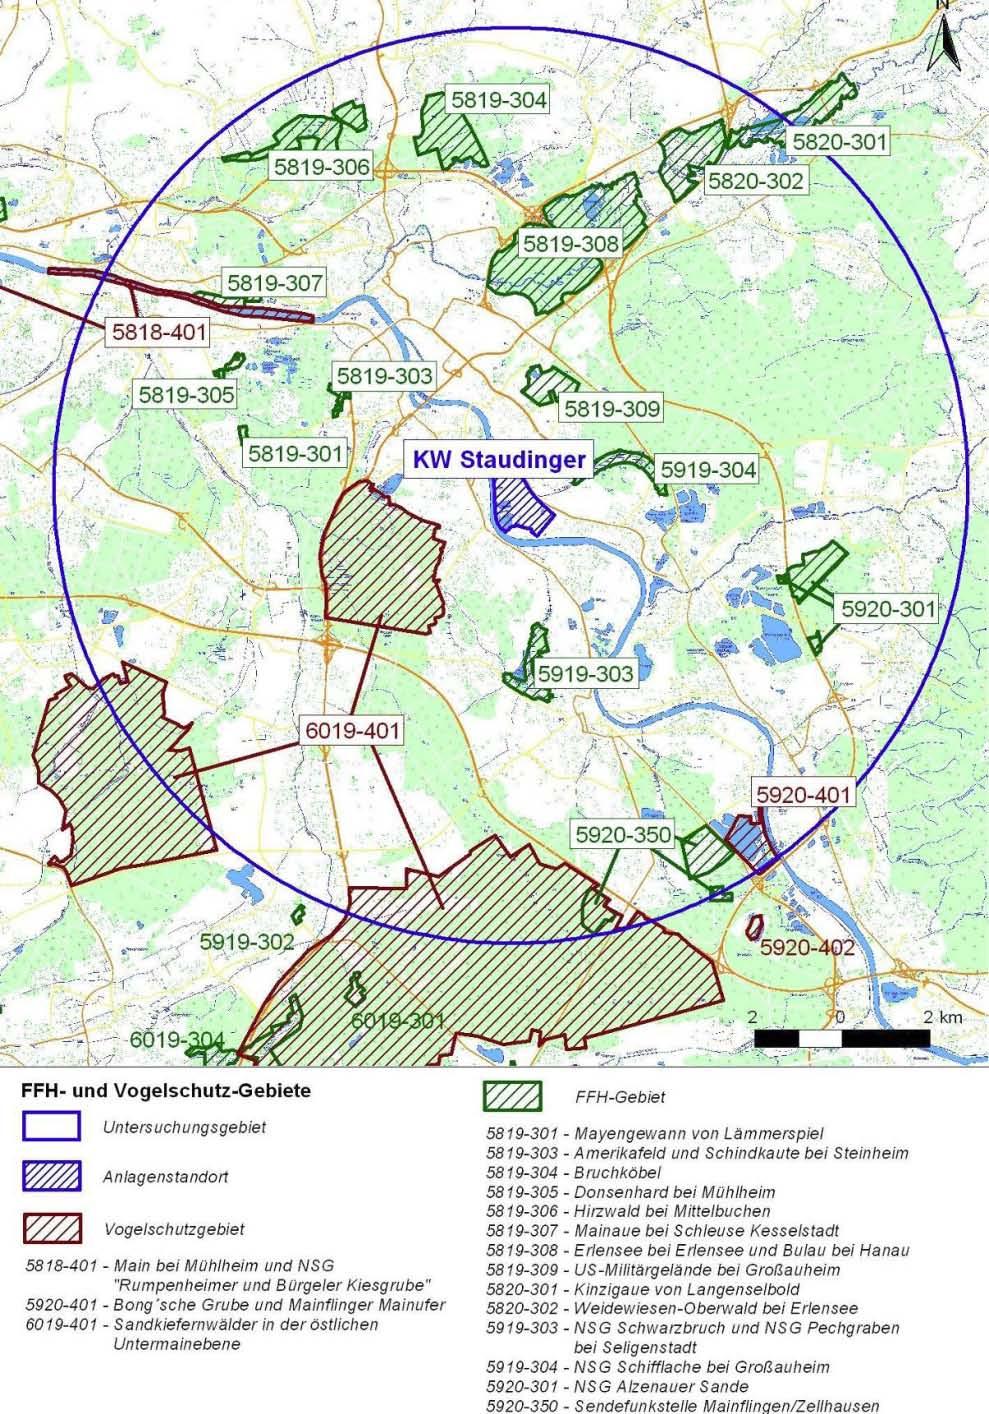 Artenschutz FFH-Gebiete: Schifflache Großauheim Erlensee Sandkiefernwald